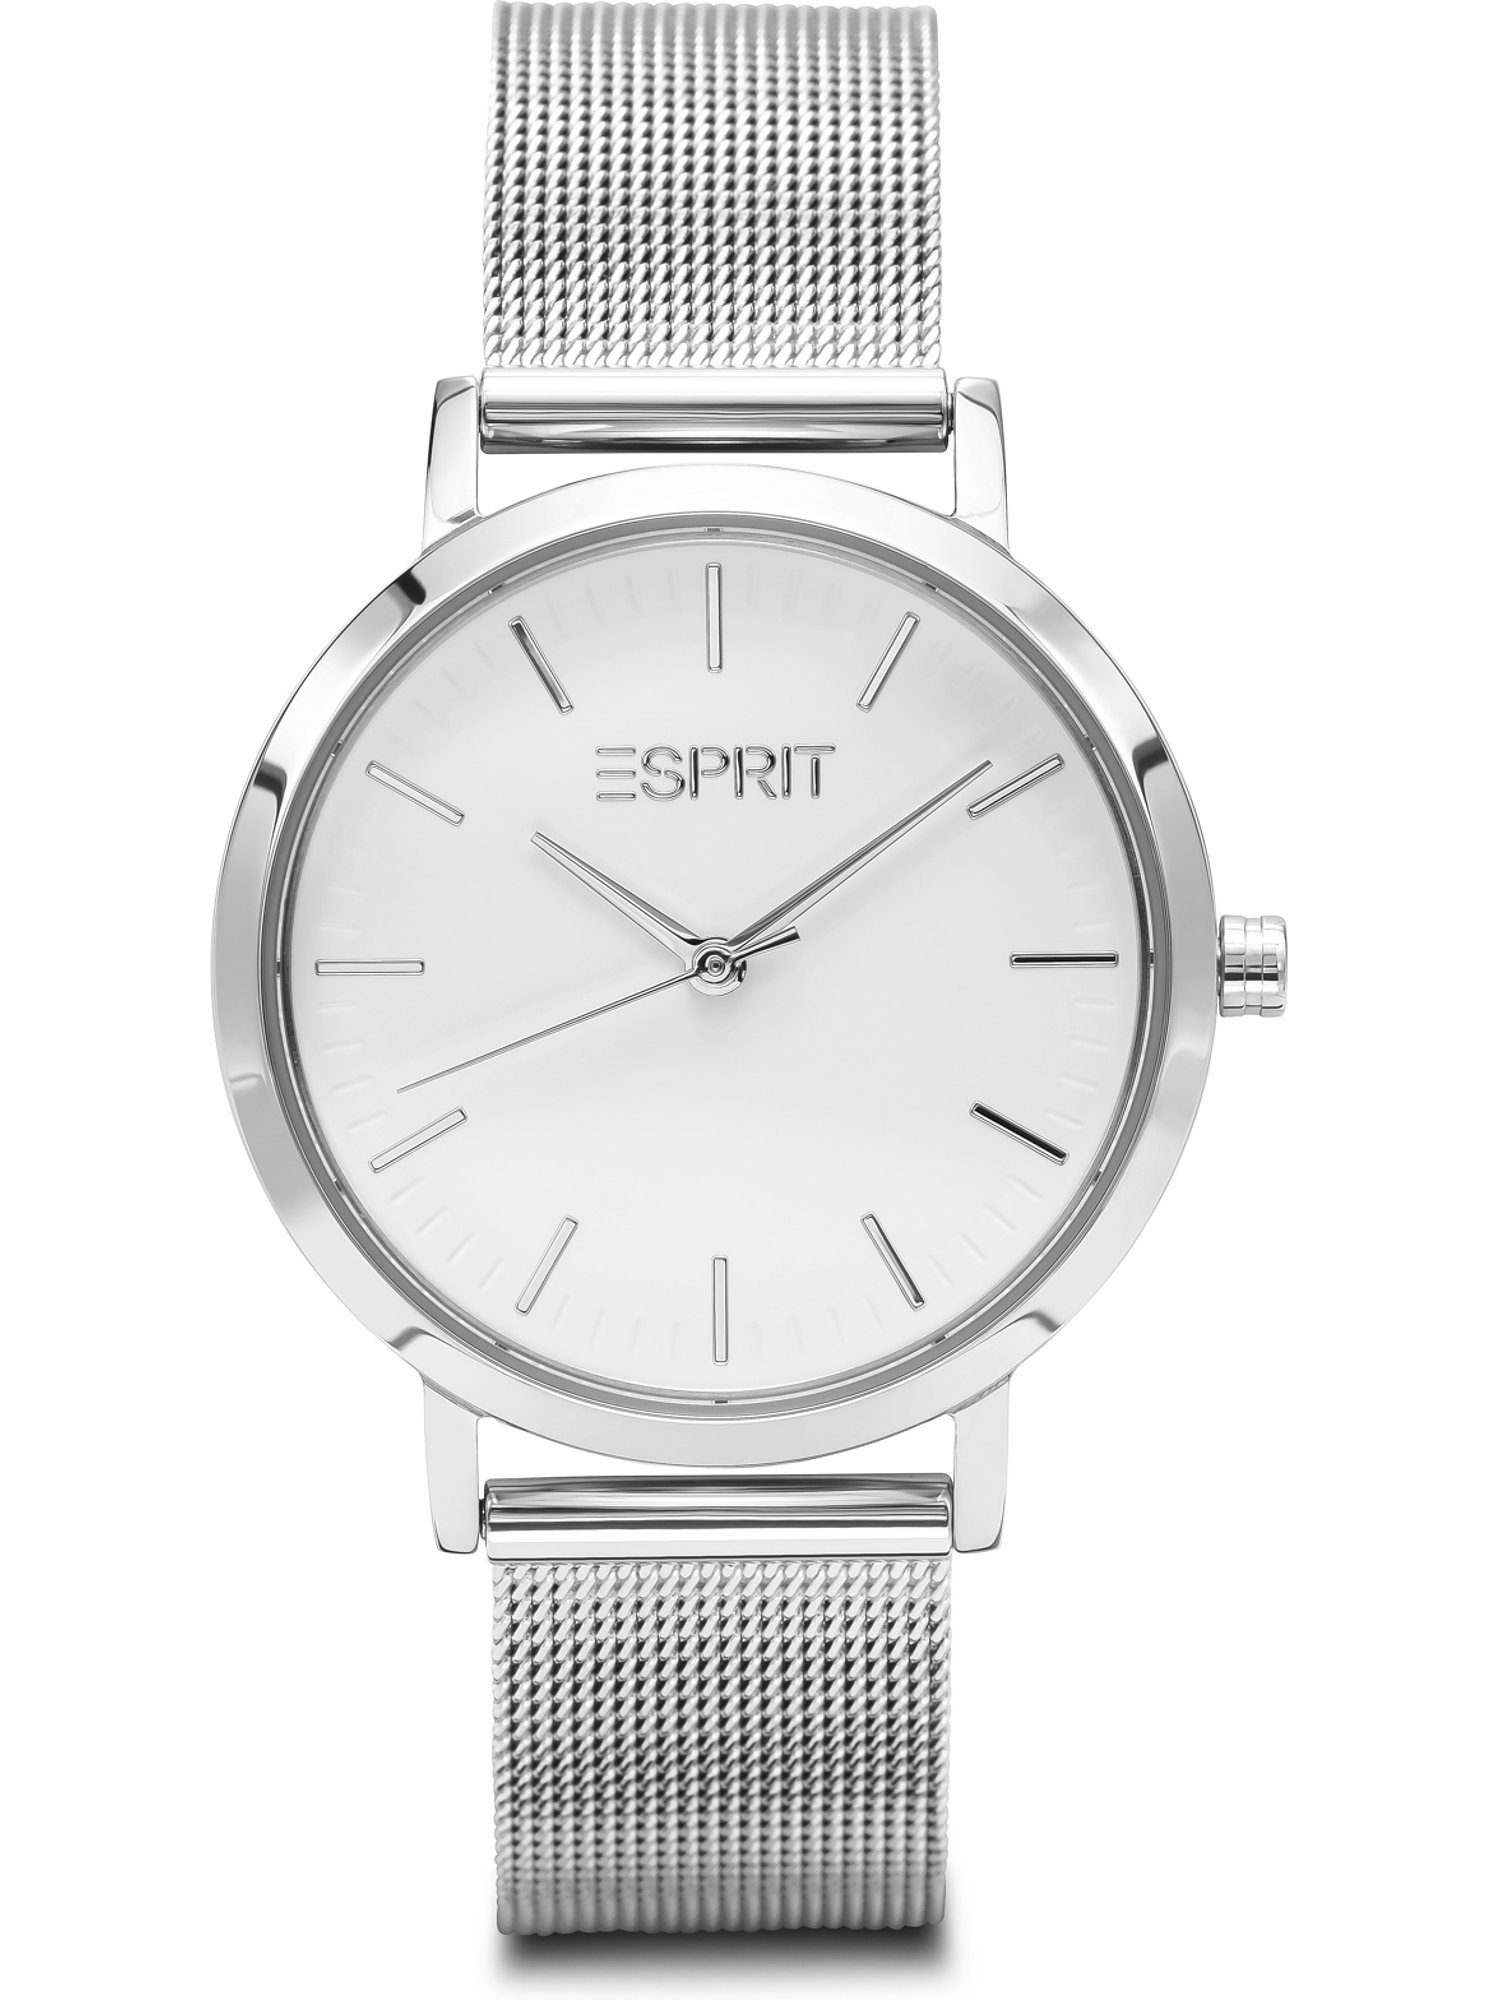 Esprit Quarzuhr ESPRIT Damen-Uhren Analog Quarz, Klassikuhr silber